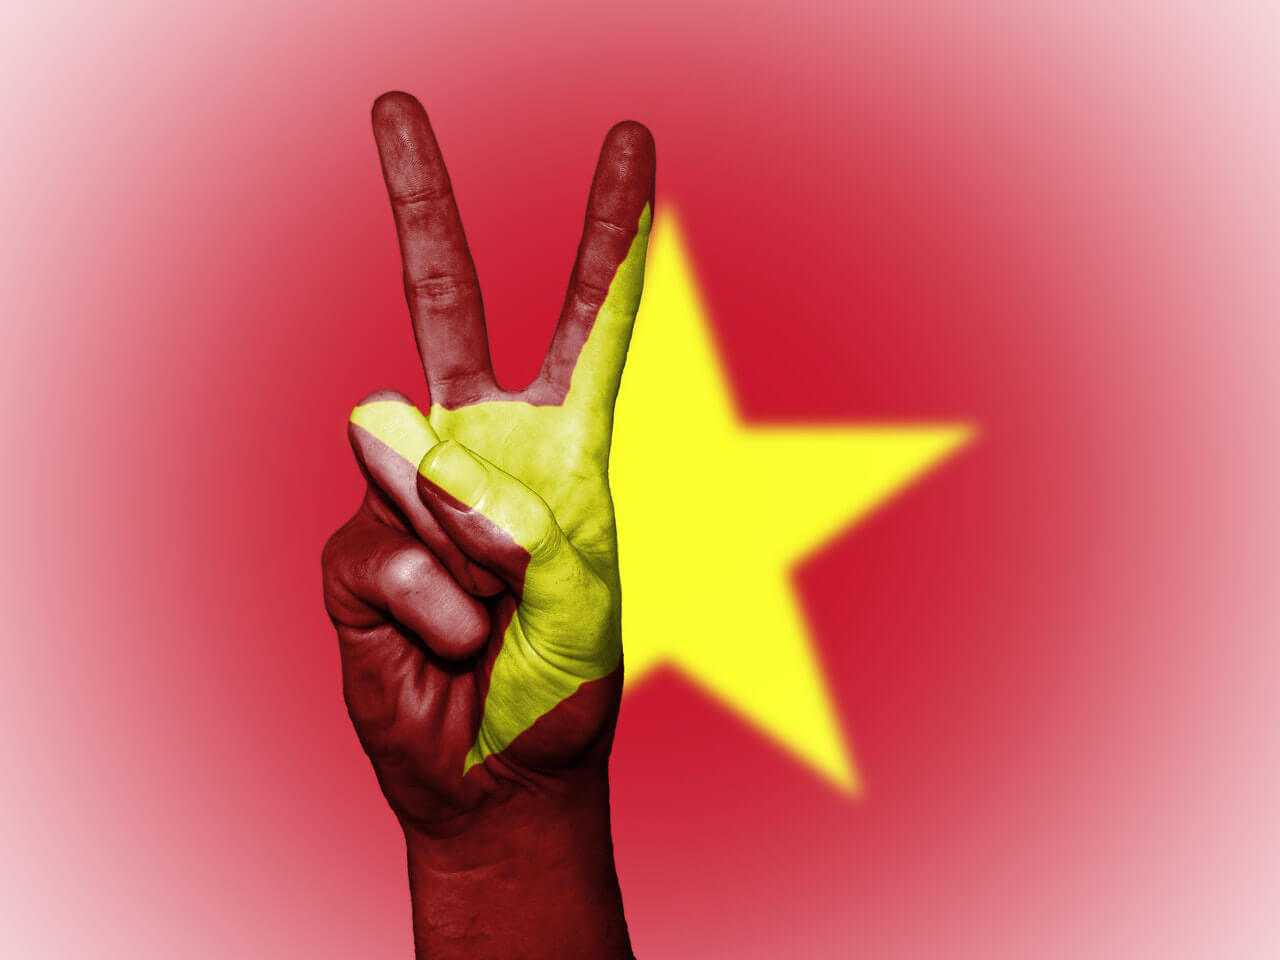 Việt nam - Thời cơ và Nắm bắt từ cuộc chiến thương mại Mỹ - Trung